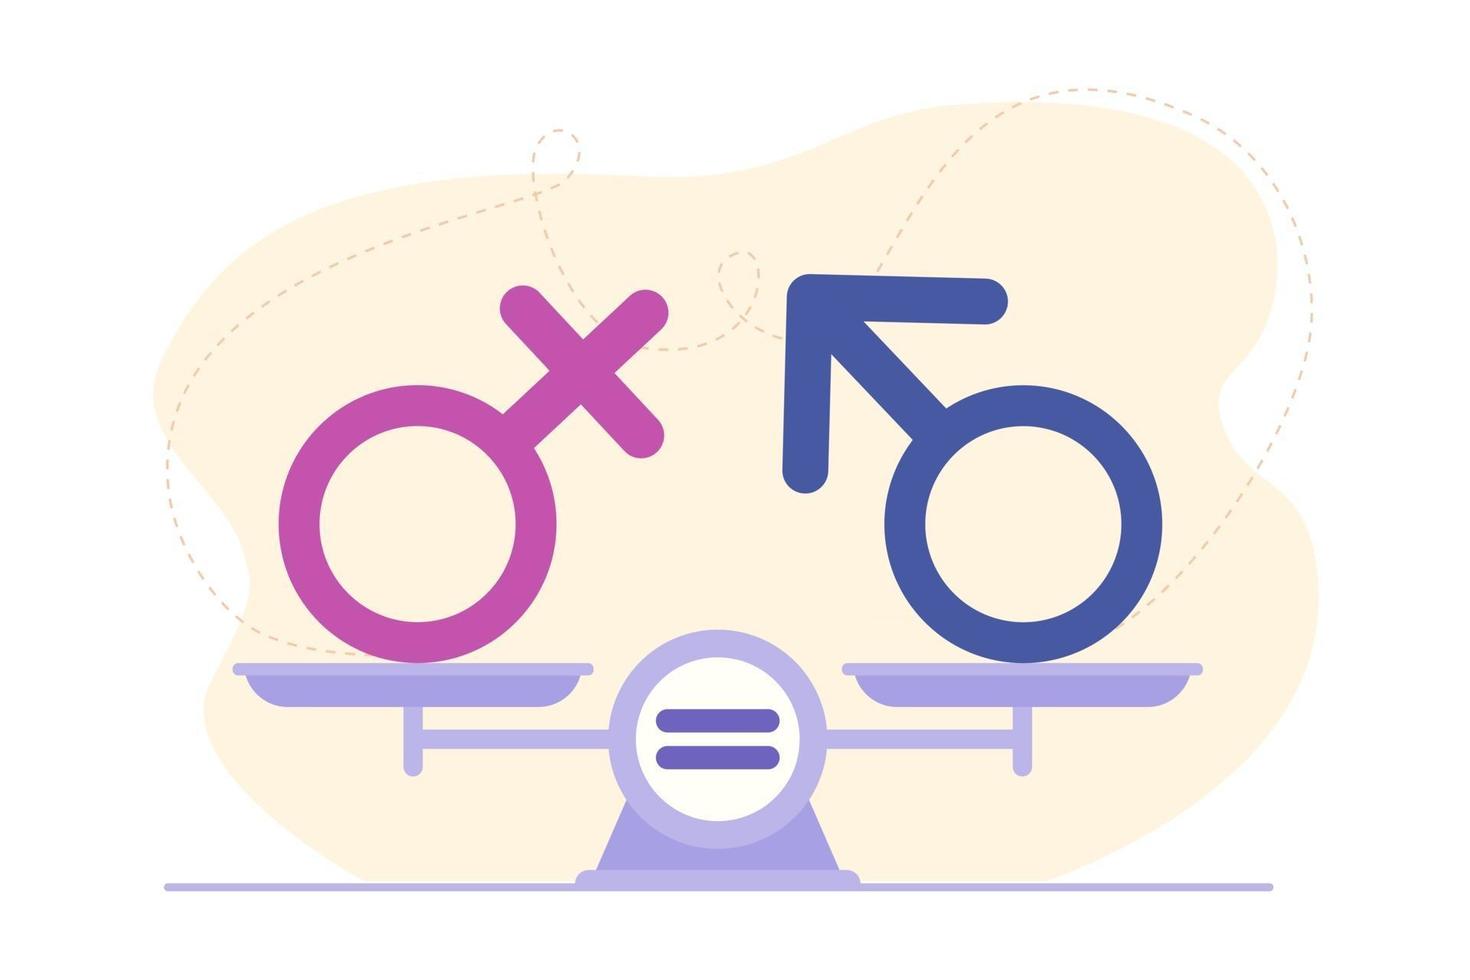 concepto de igualdad de género. signo de género masculino y femenino en  escalas. símbolo de confianza,